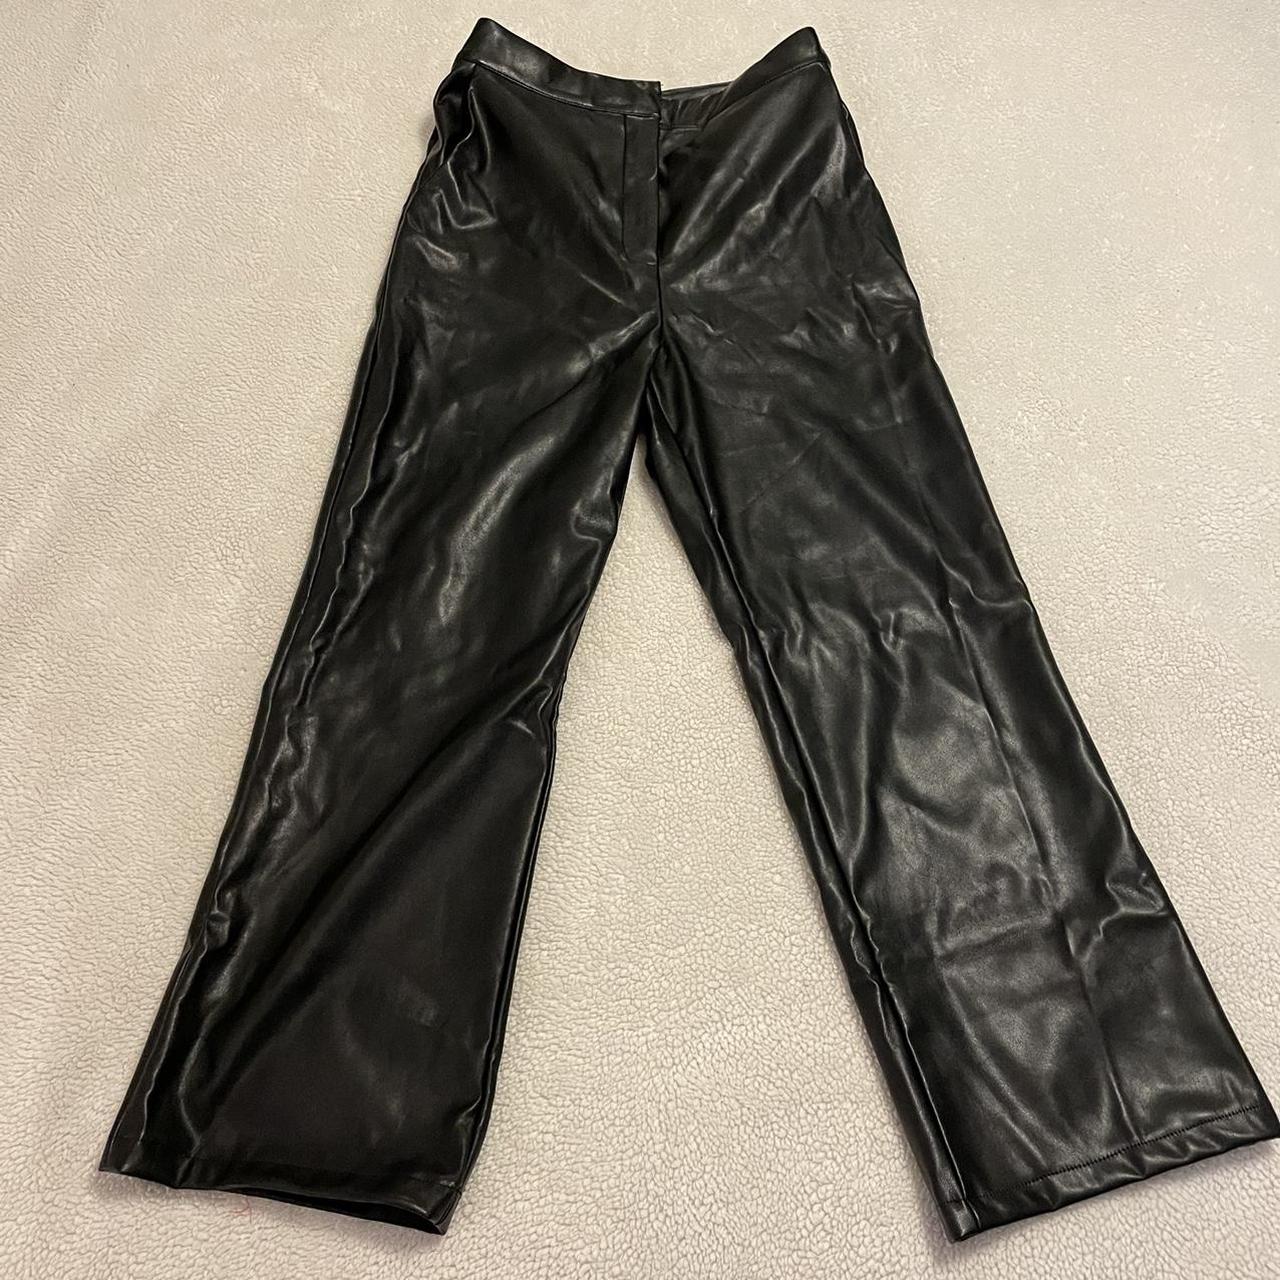 black leather pants ★ 🤎DM FOR BUNDLE... - Depop